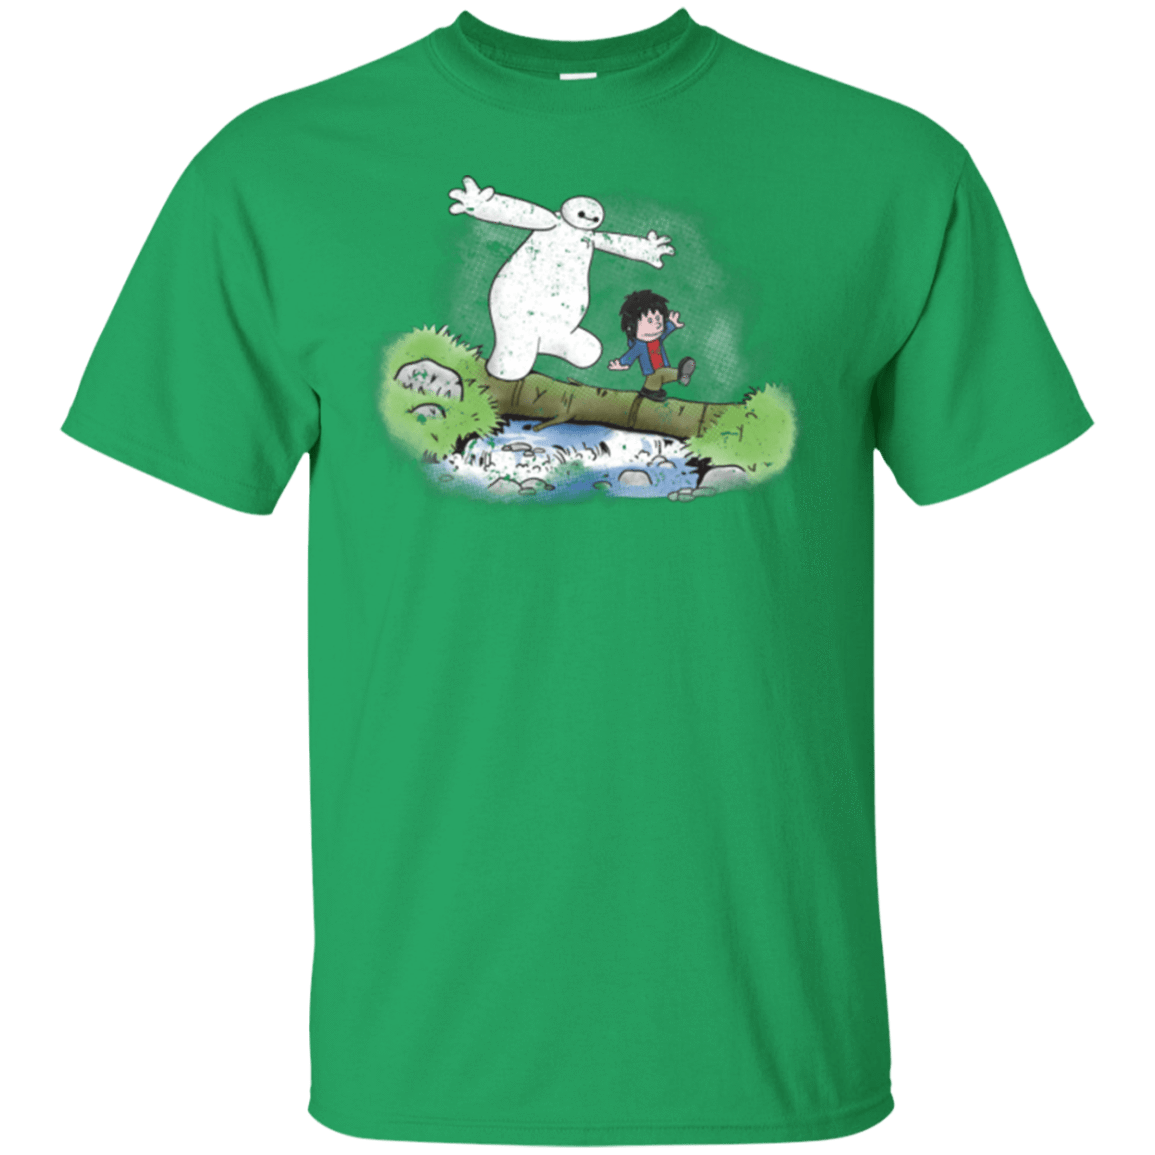 T-Shirts Irish Green / Small Baymax And Hiro T-Shirt